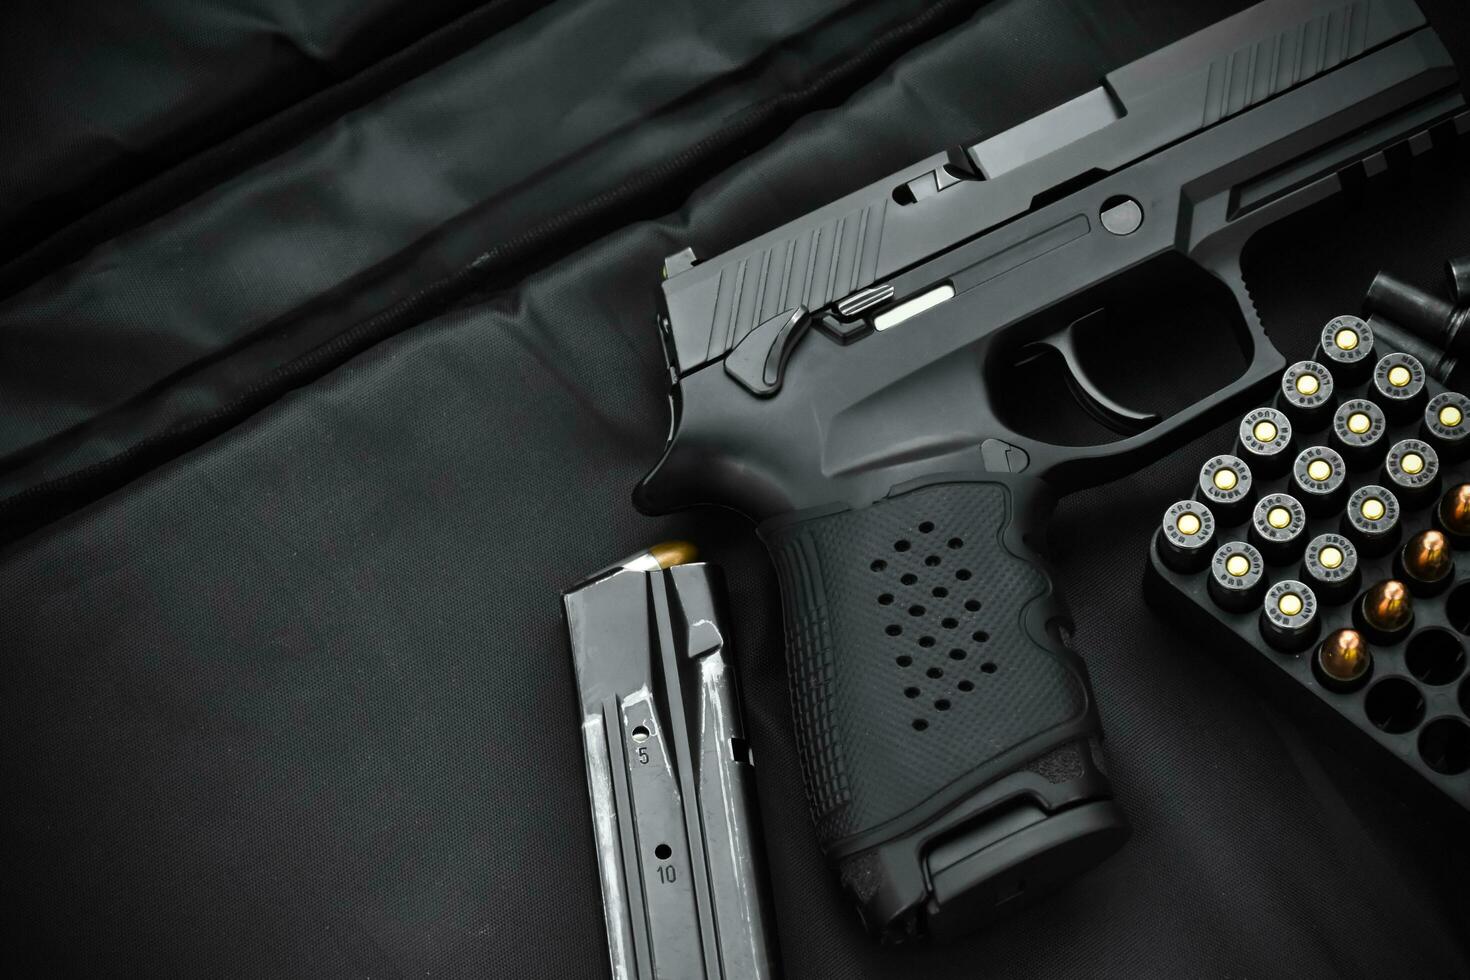 pistola preta automática de 9 mm e balas em fundo de couro preto, foco seletivo e suave. foto